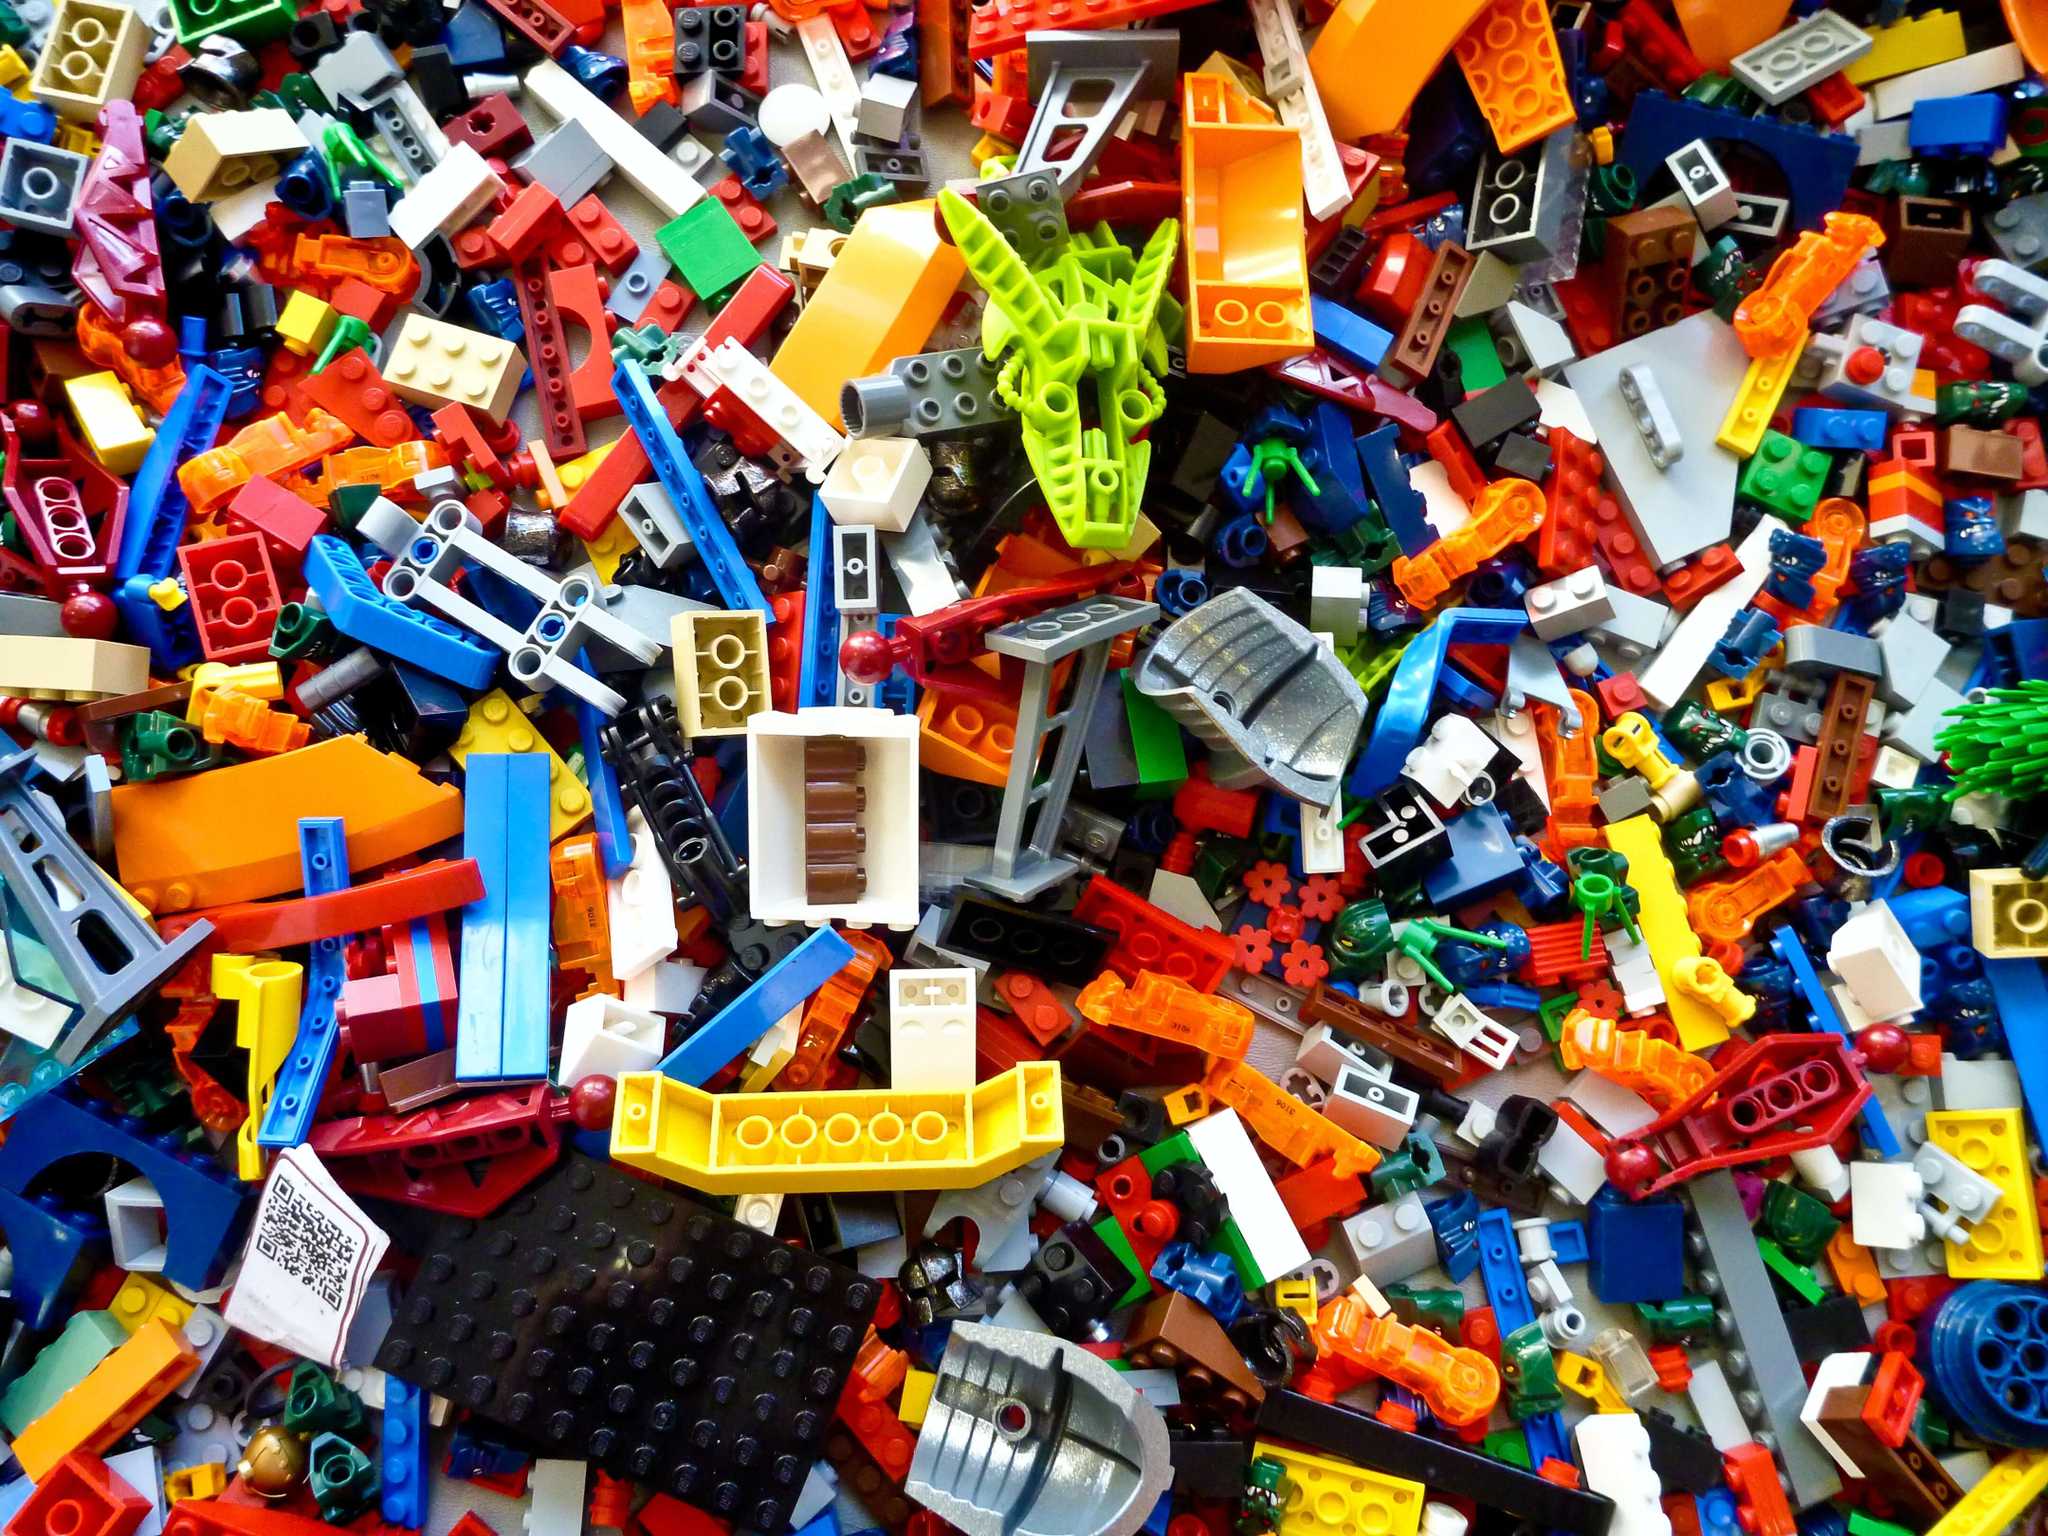 lots of random lego bricks